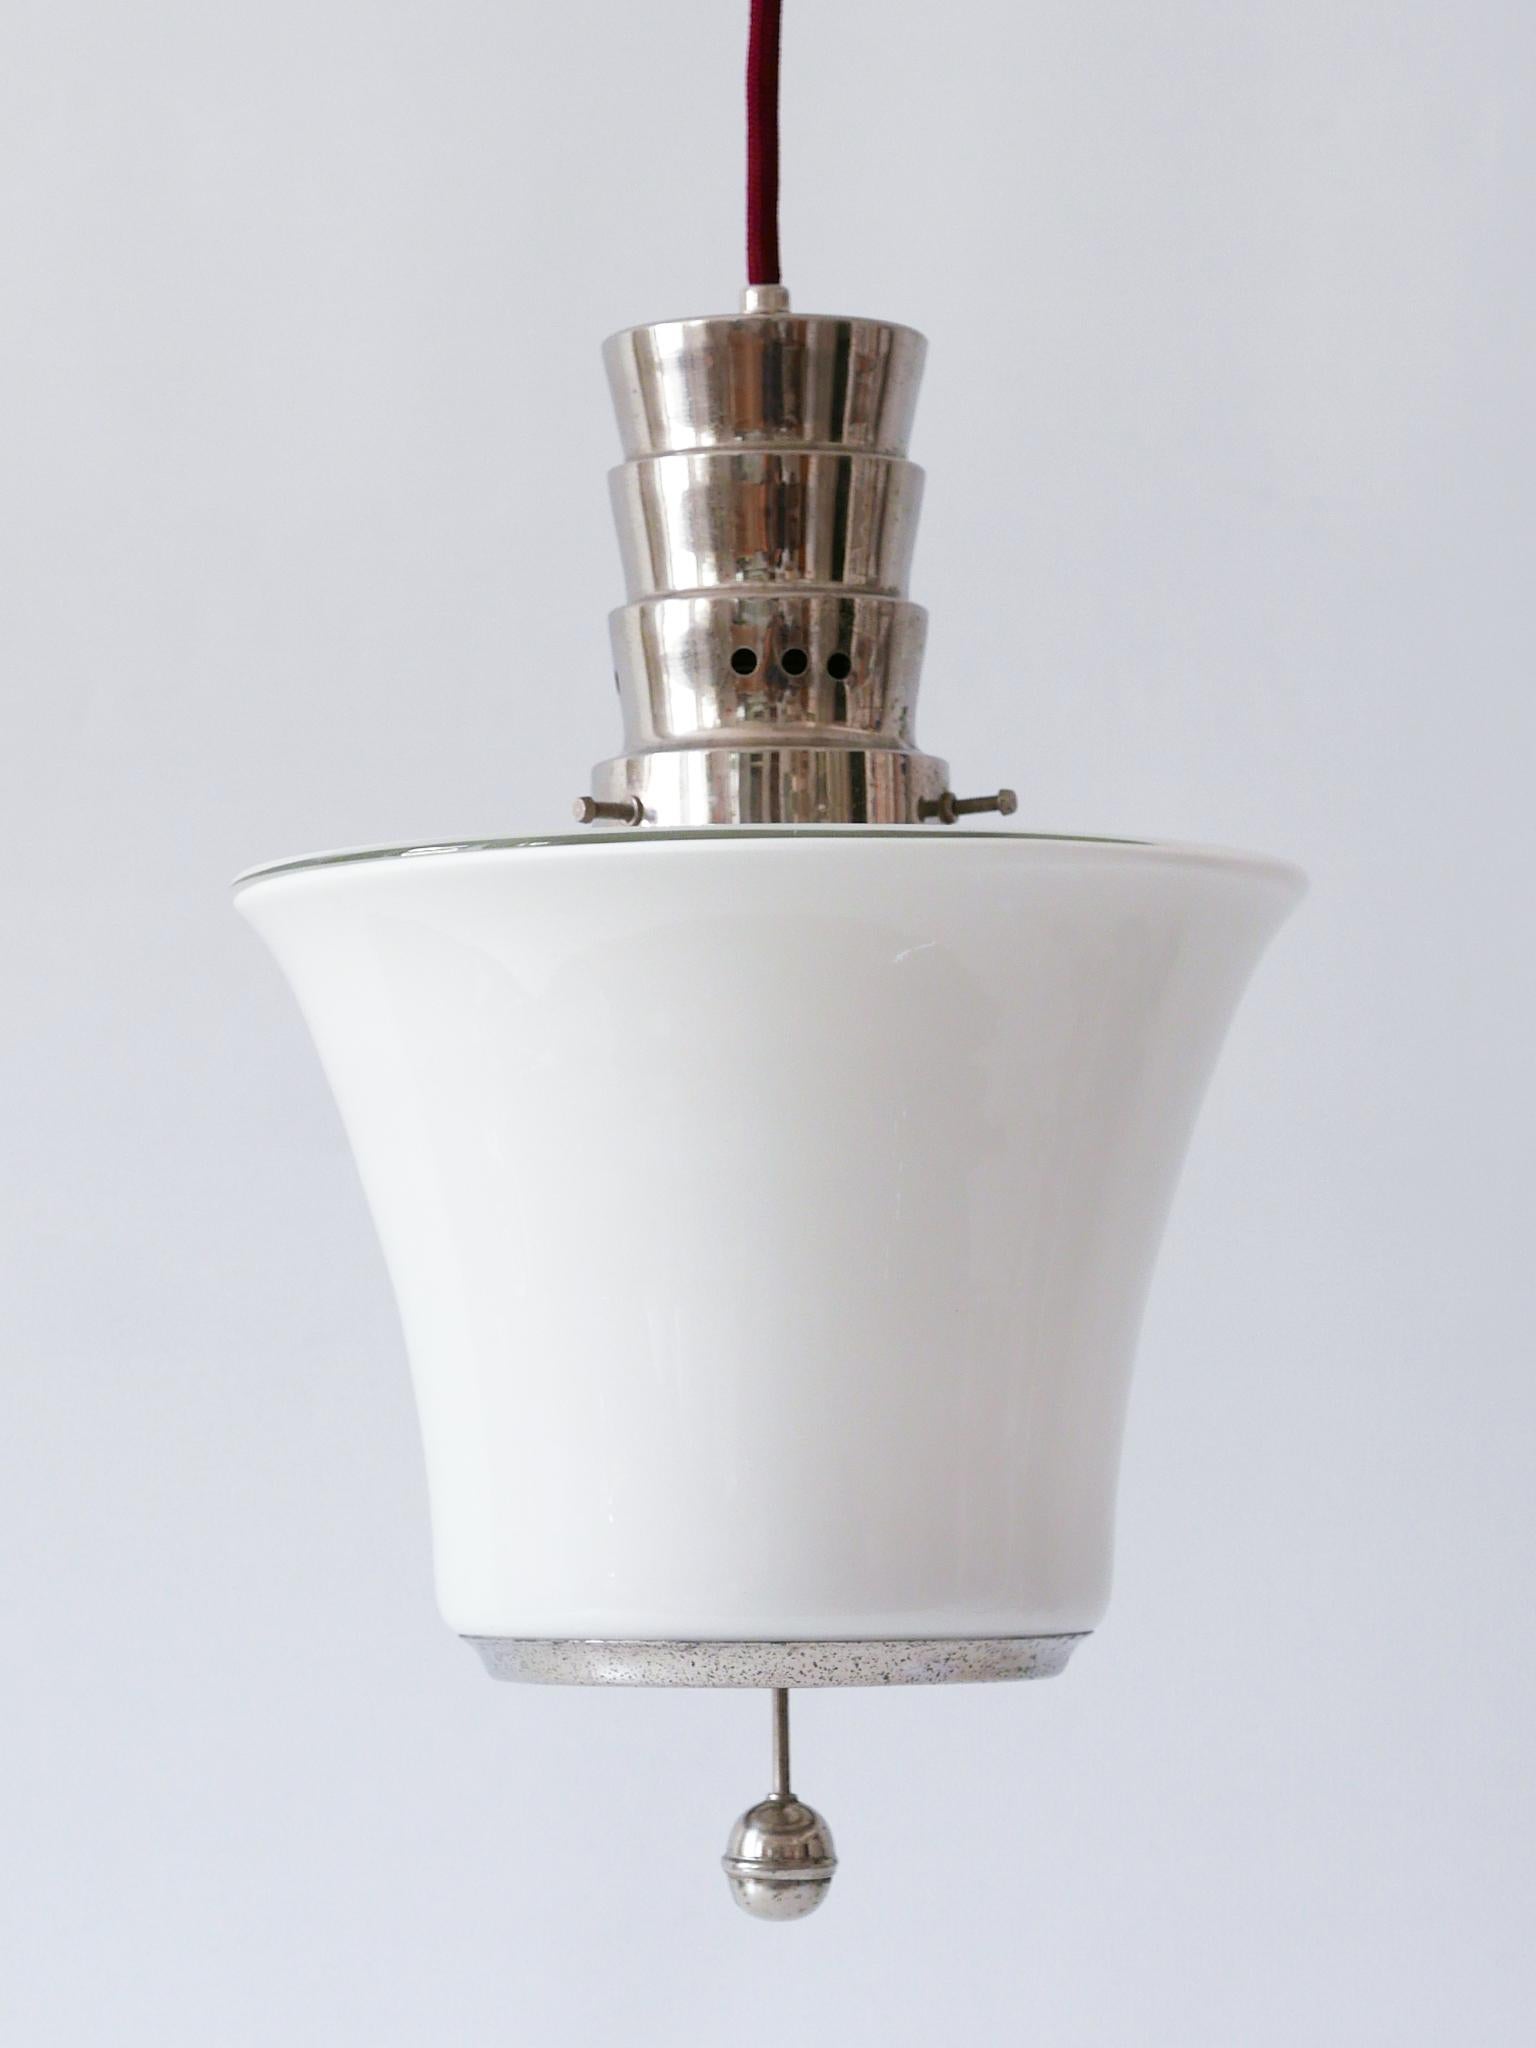 Exceptional Dr. Twerdy Original Bauhaus Art Deco Pendant Lamp, 1920s, Germany For Sale 7